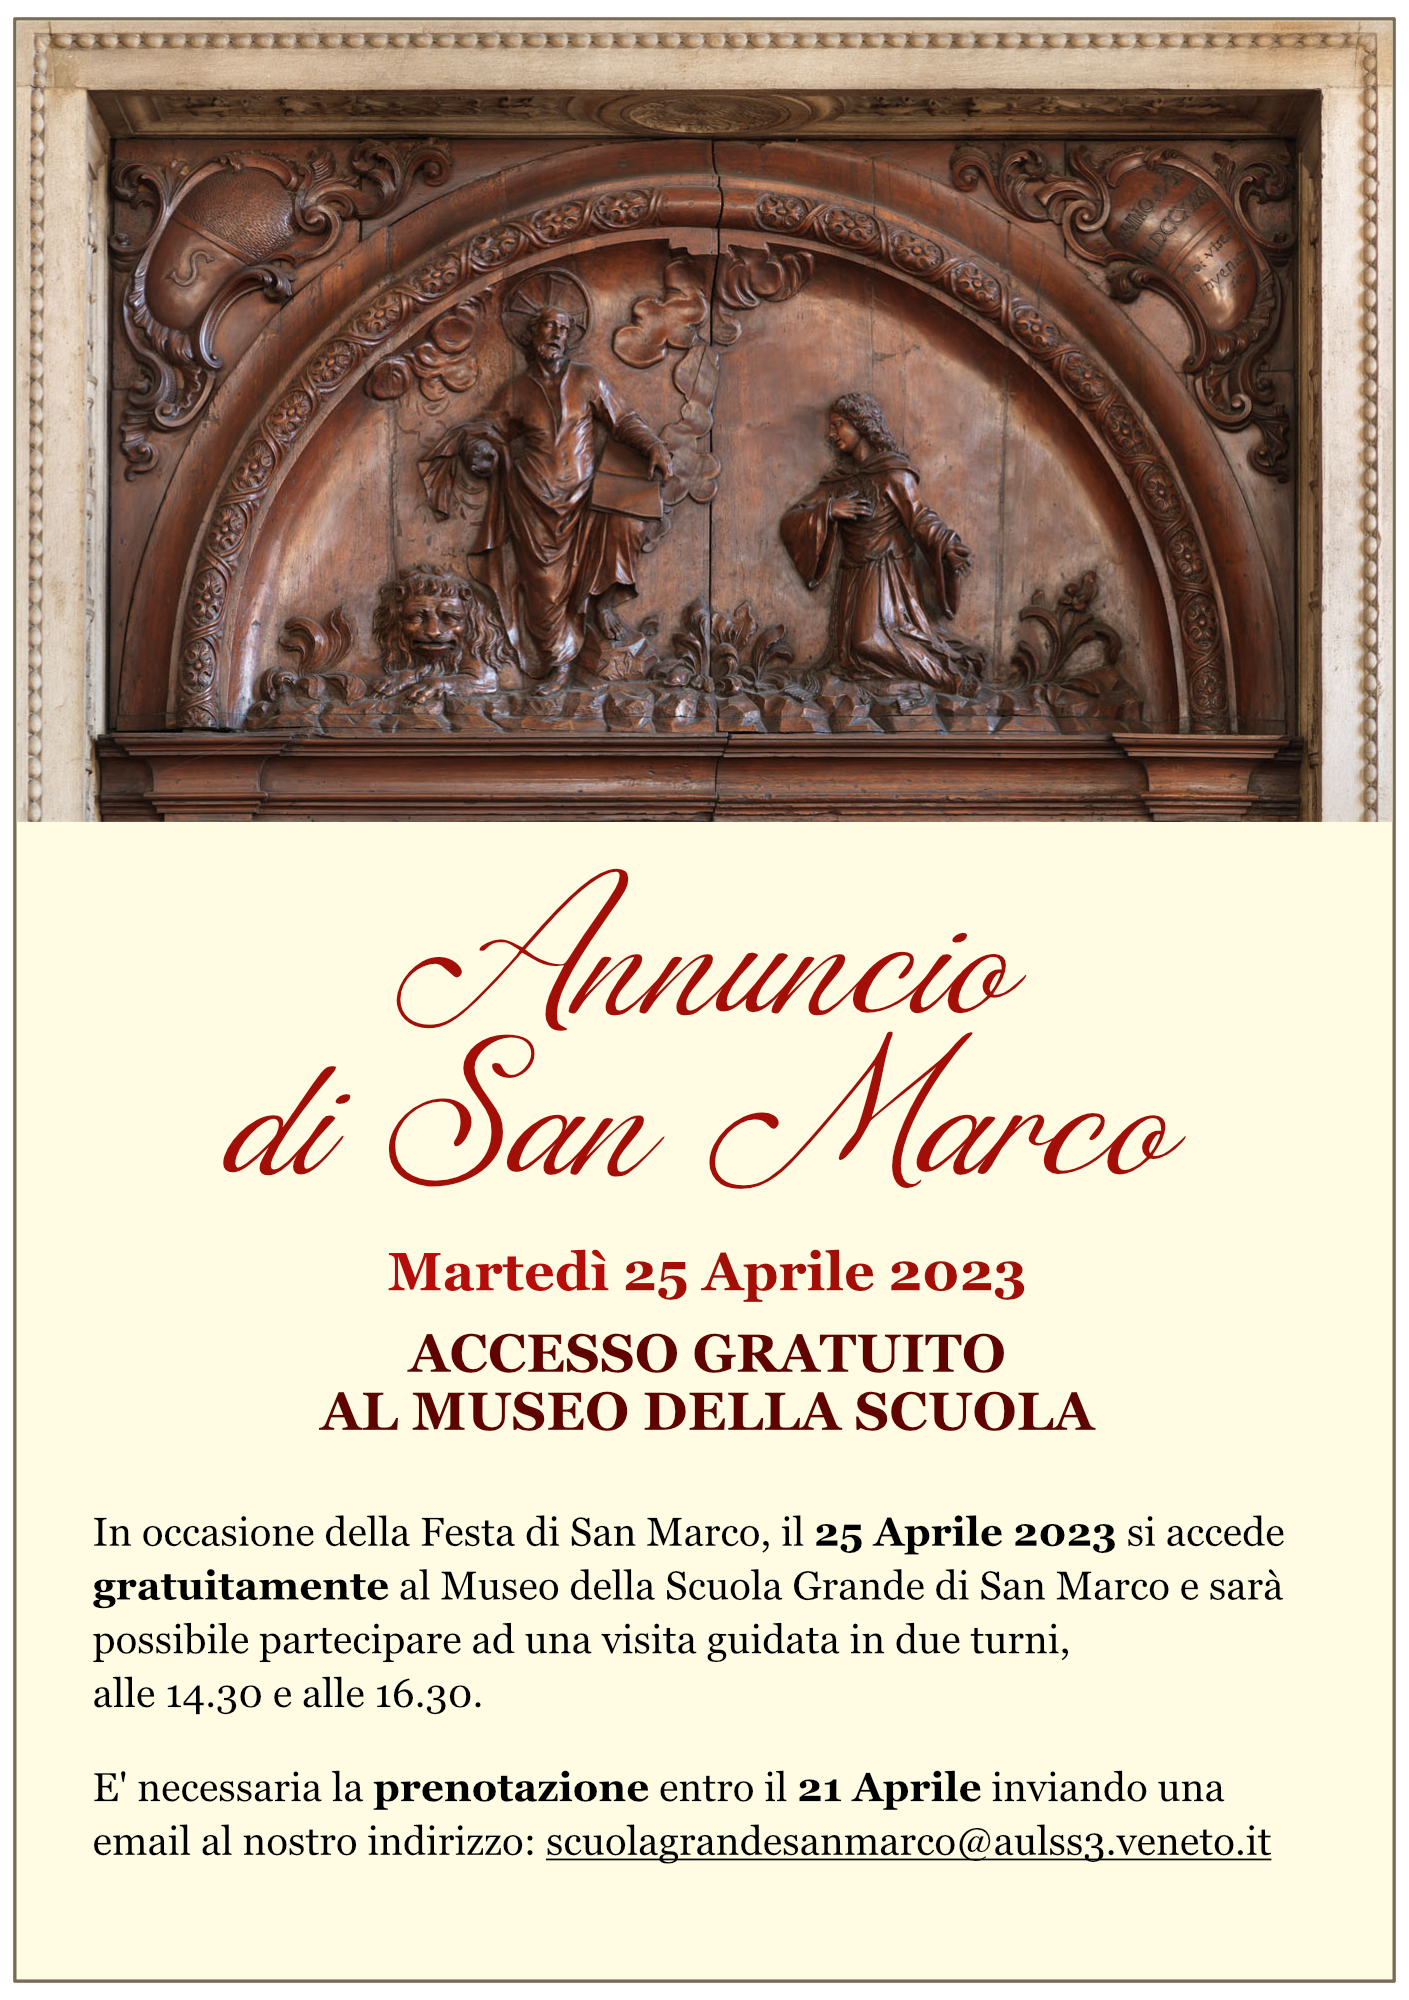 Annuncio di San Marco | 25 Aprile 2023 | Accesso gratuito al Museo della Scuola